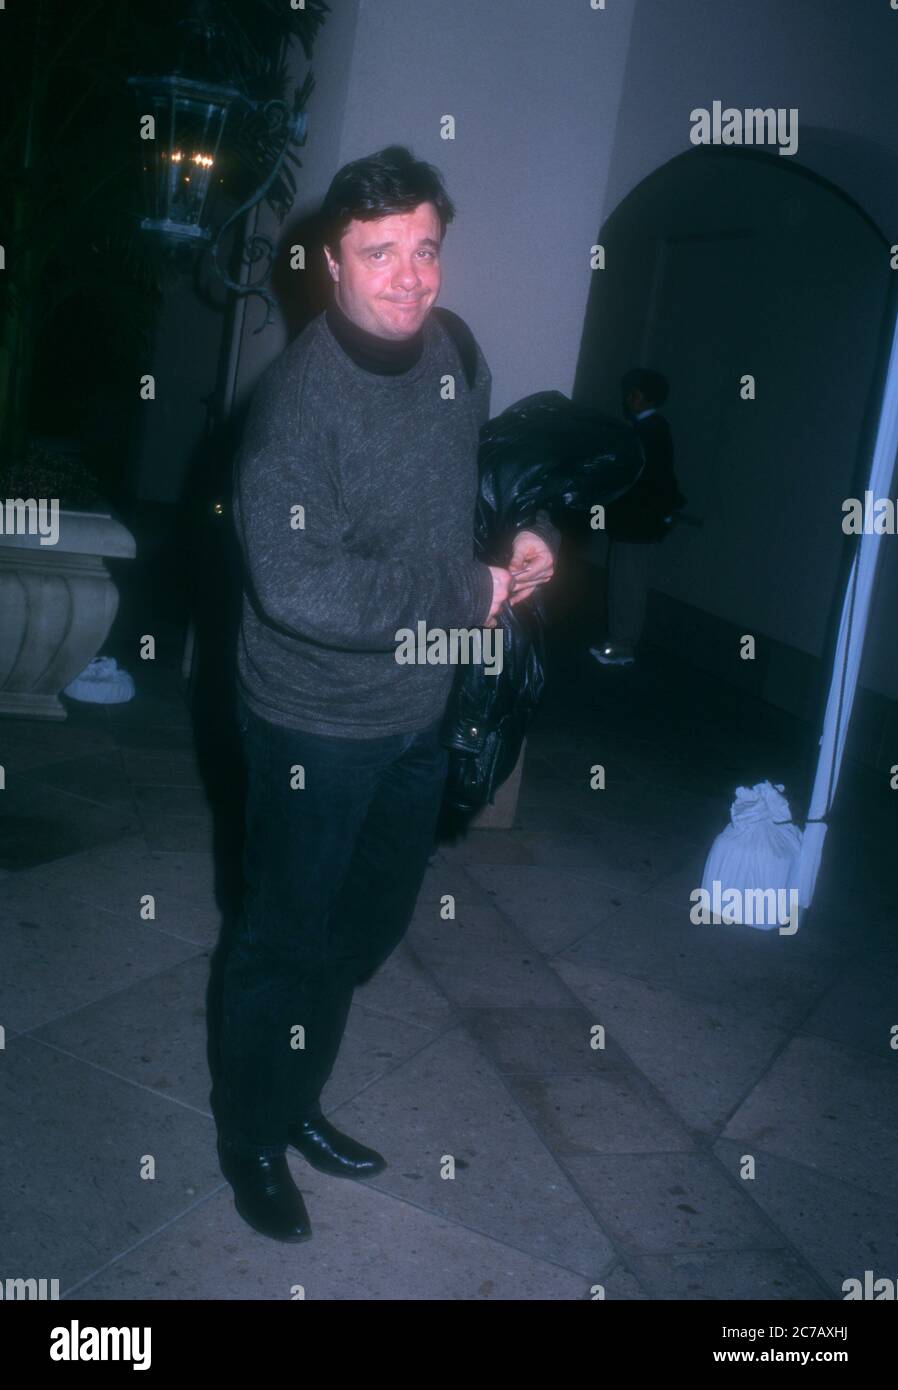 Pasadena, Californie, États-Unis 11 janvier 1996 l'acteur Nathan Lane participe à la tournée de presse de l'ACT d'hiver le 11 janvier 1996 à l'hôtel Ritz-Carlton de Pasadena, Californie, États-Unis. Photo par Barry King/Alay stock photo Banque D'Images